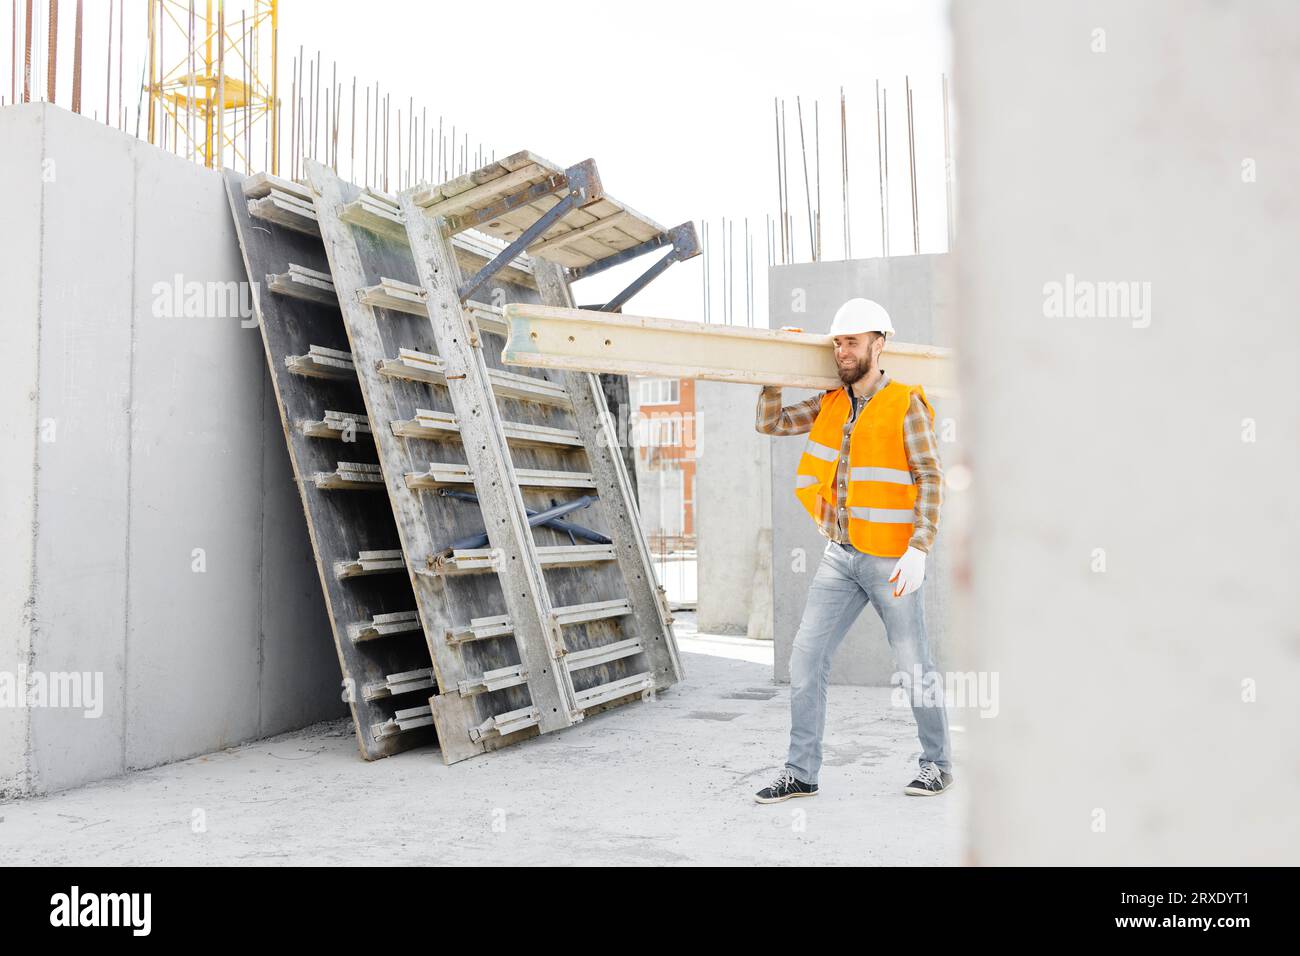 Bauarbeiter mit helm und weste trägt an seinem arbeitstag holz auf der  baustelle